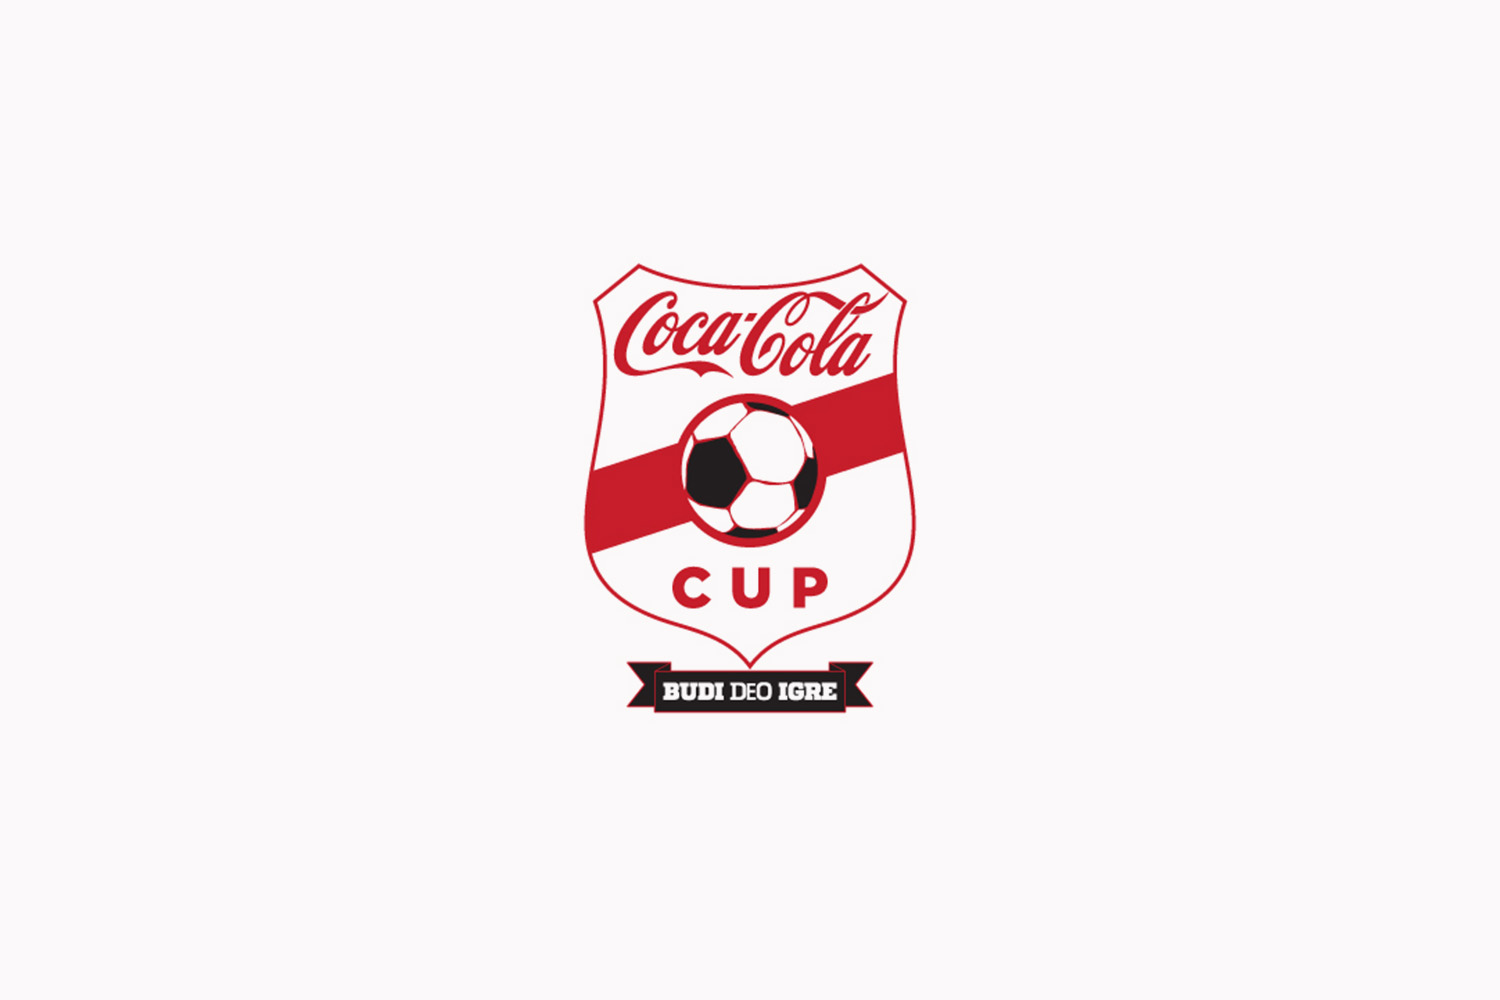 Coca-Cola CUP